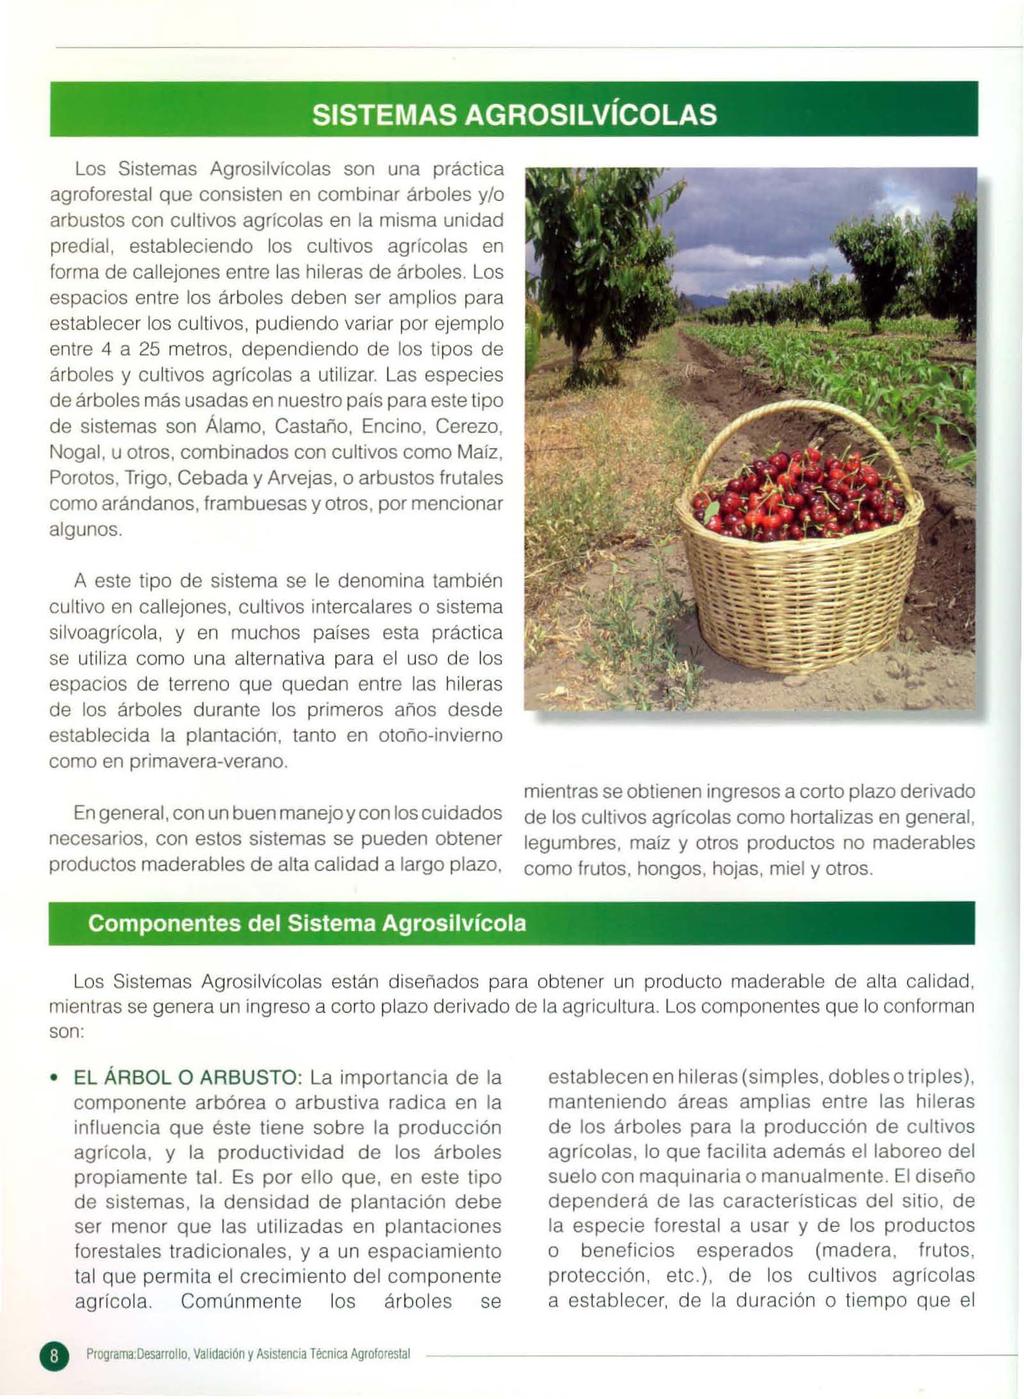 Los Sistemas Agrosilvícolas son una práctica agroforestal que consisten en combinar árboles y/o arbustos con cultivos agrícolas en la misma unidad predial, establecíendo los cultivos agrícolas en